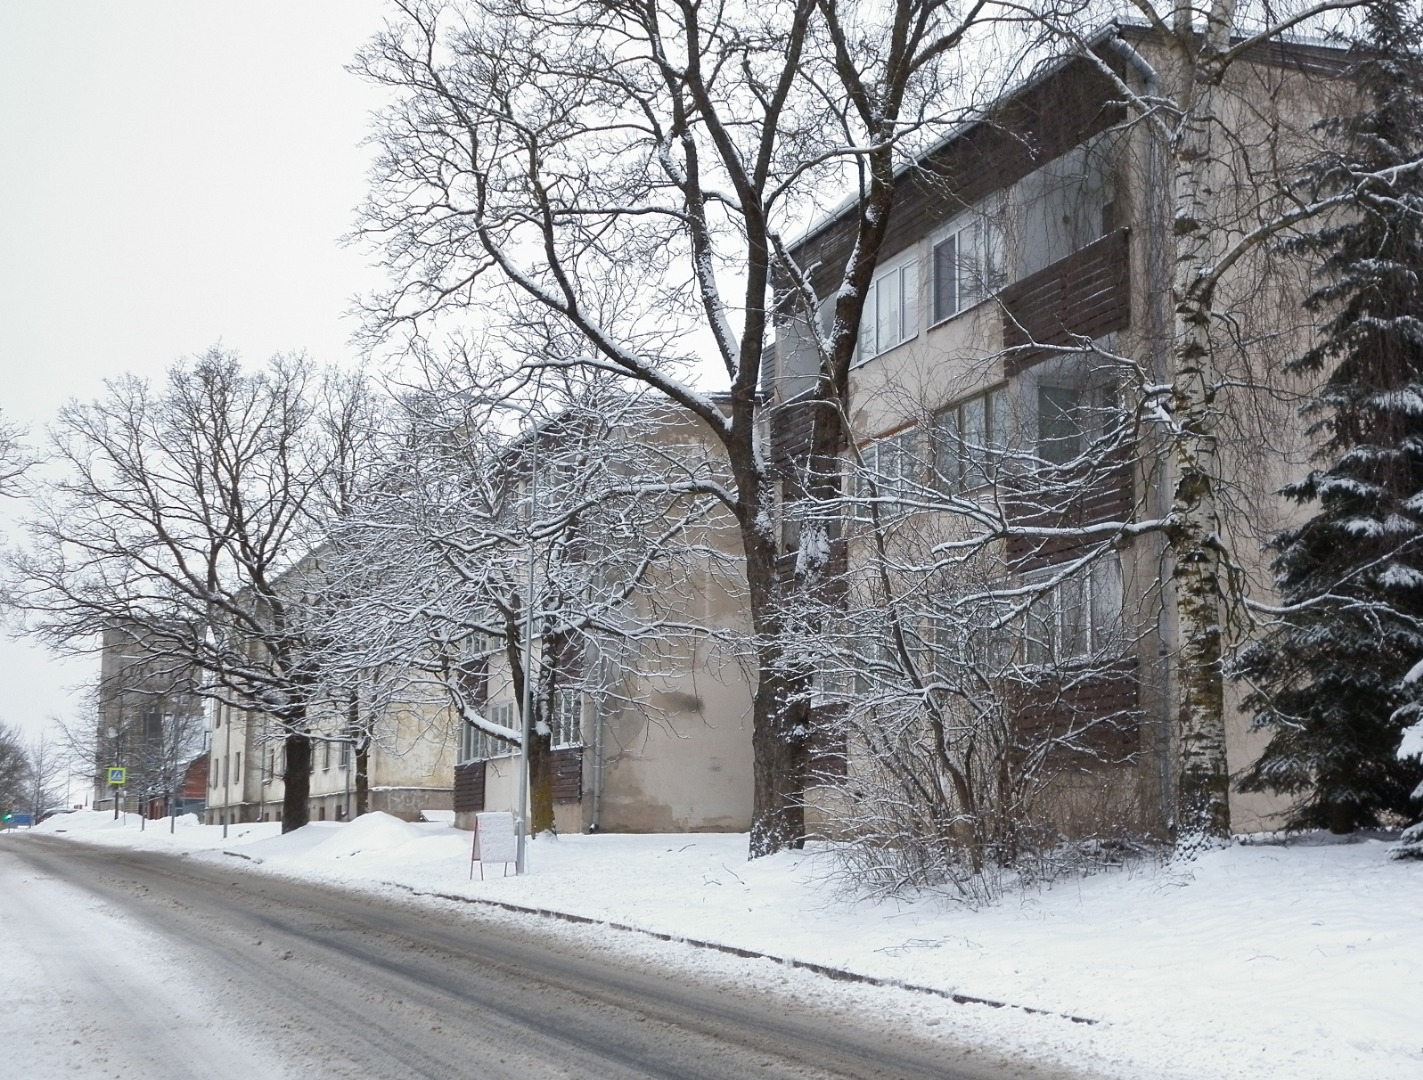 foto, Viljandi, Leola tn 10 (taga nr 14), Viljandi MEK töötajate maja, 1976, foto E. Veliste rephoto